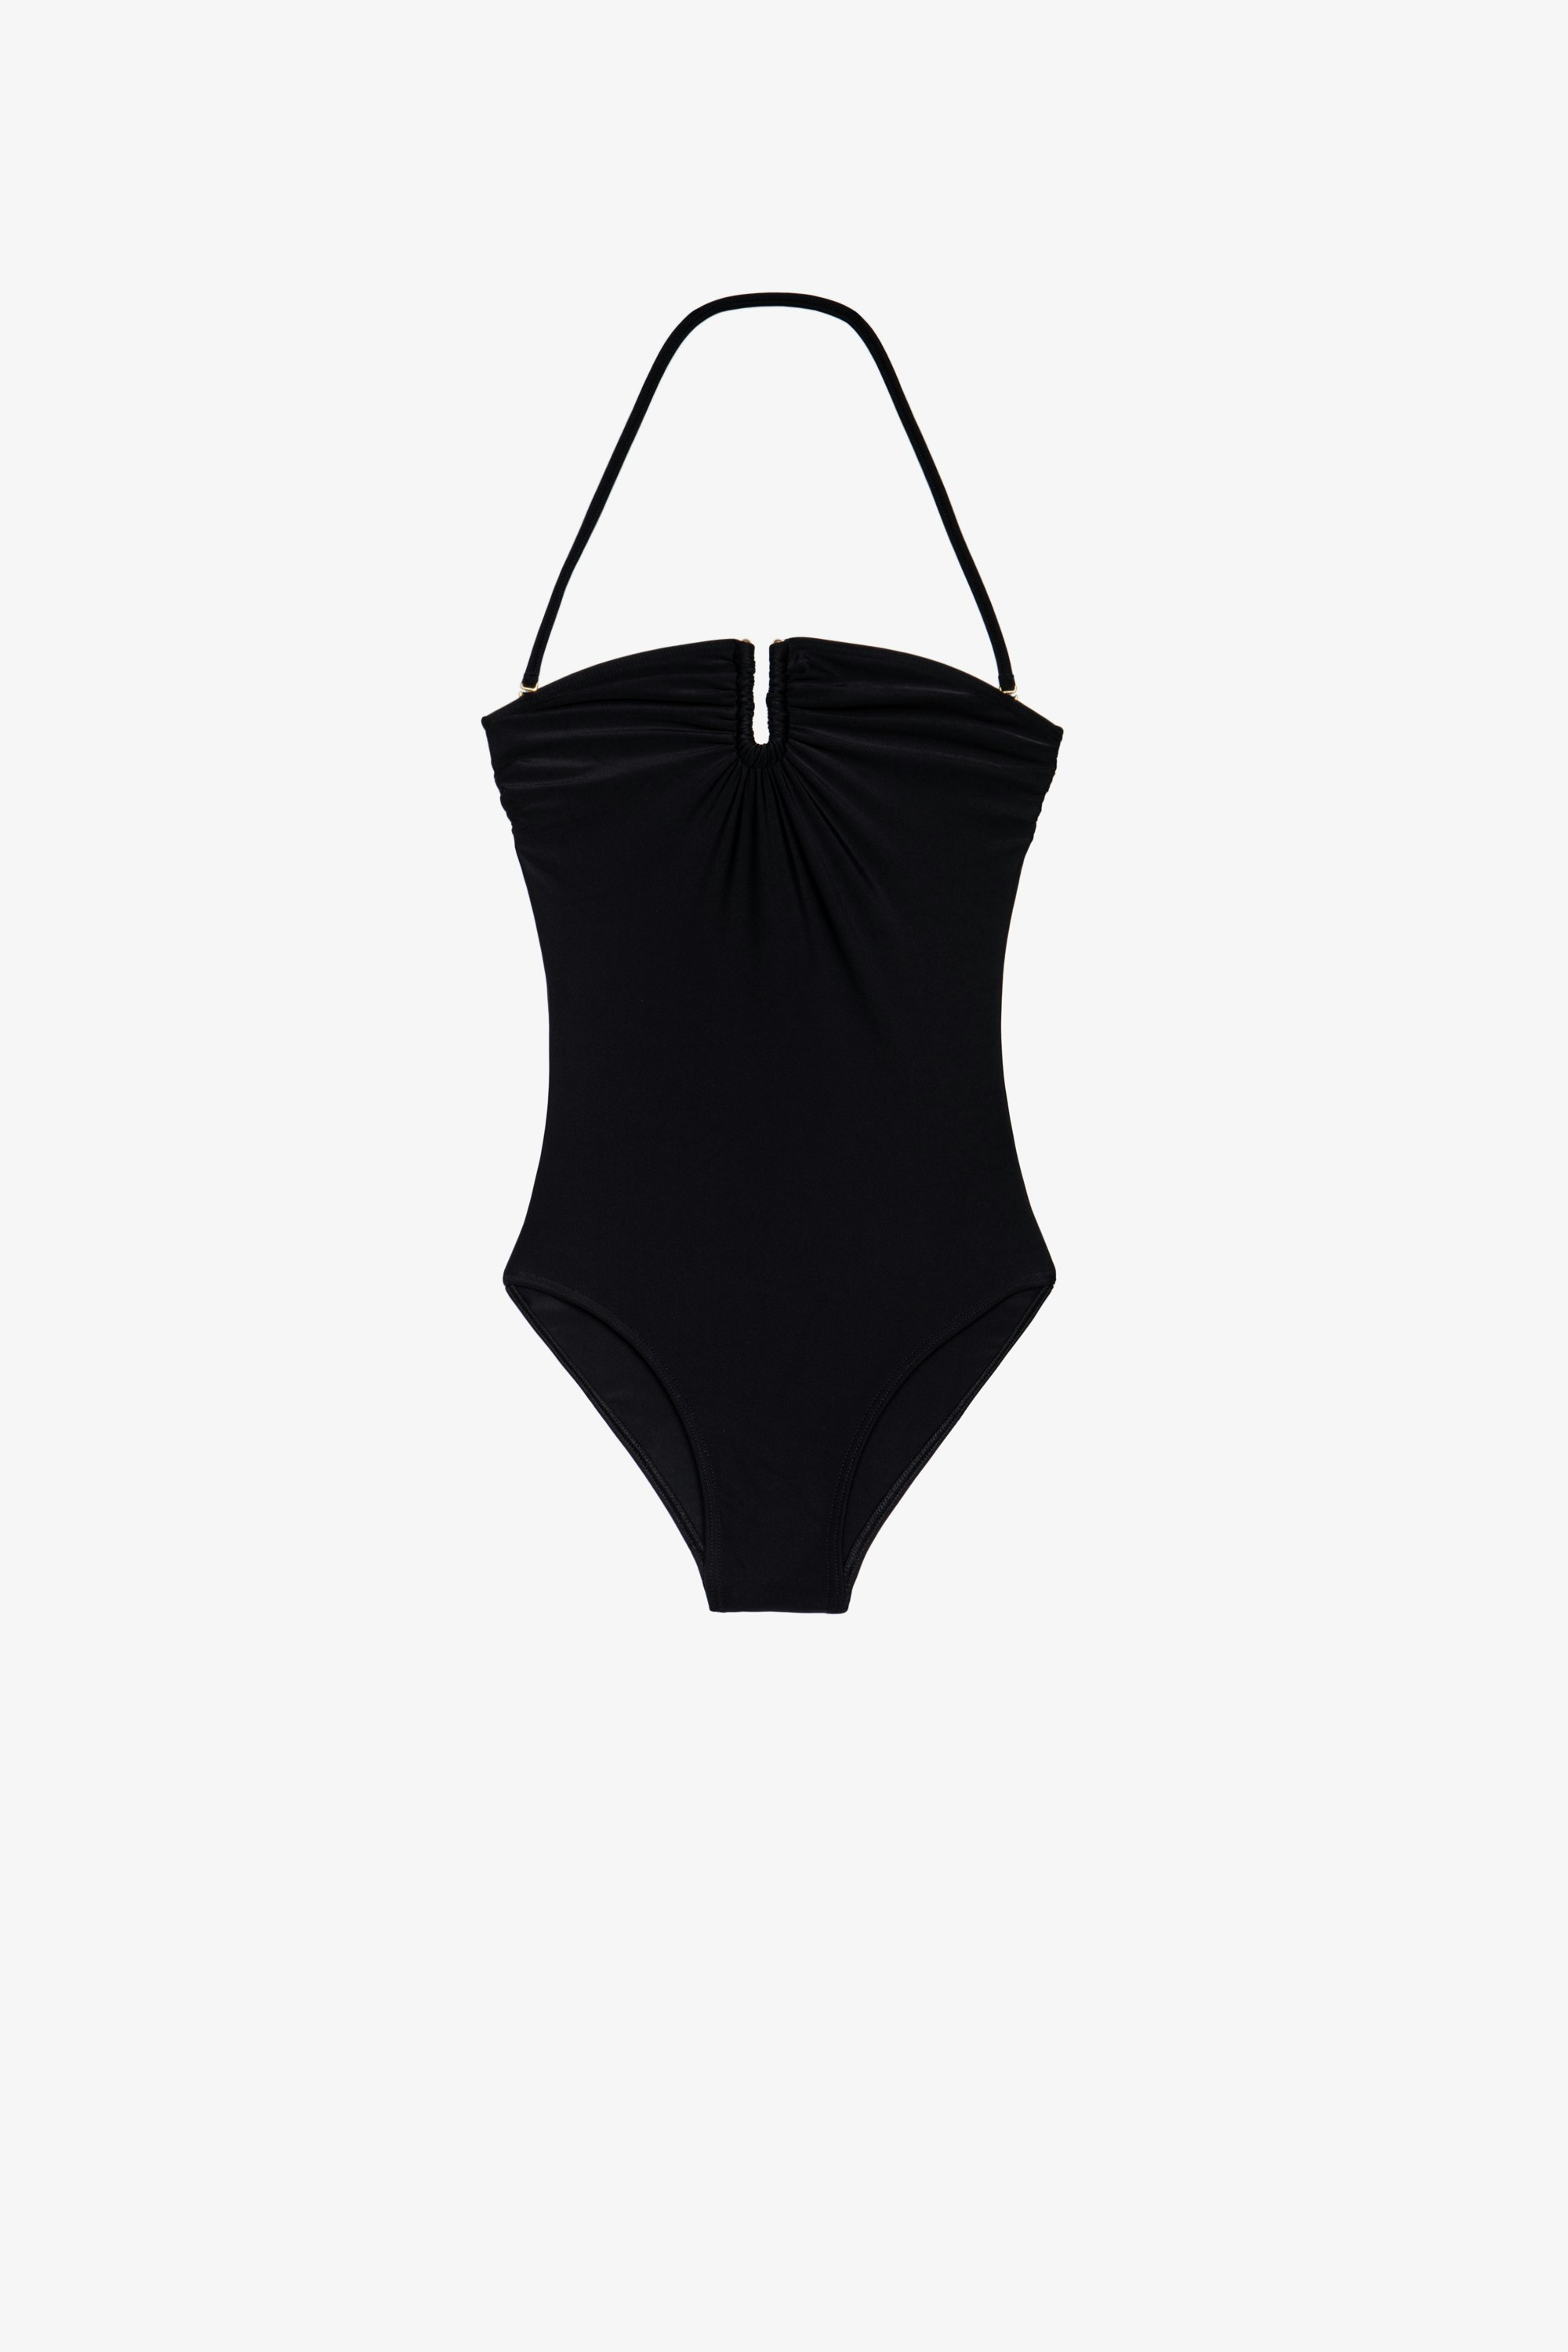 Wings 水着 1-piece women's swimsuit in black